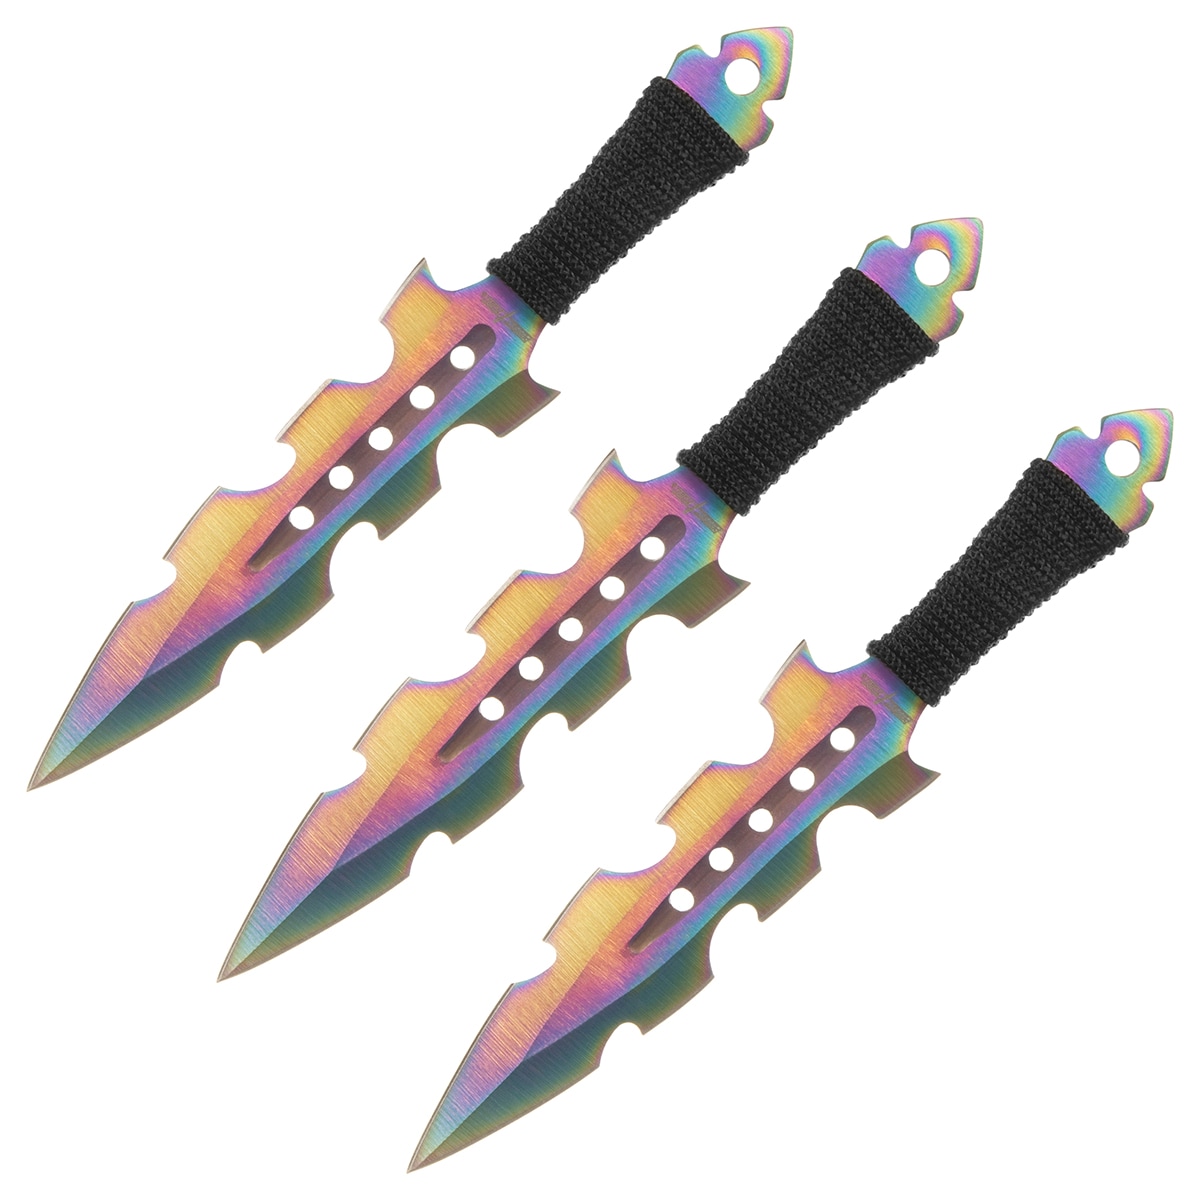 Nóż rzutka Master Cutlery Rainbow - 3 szt.